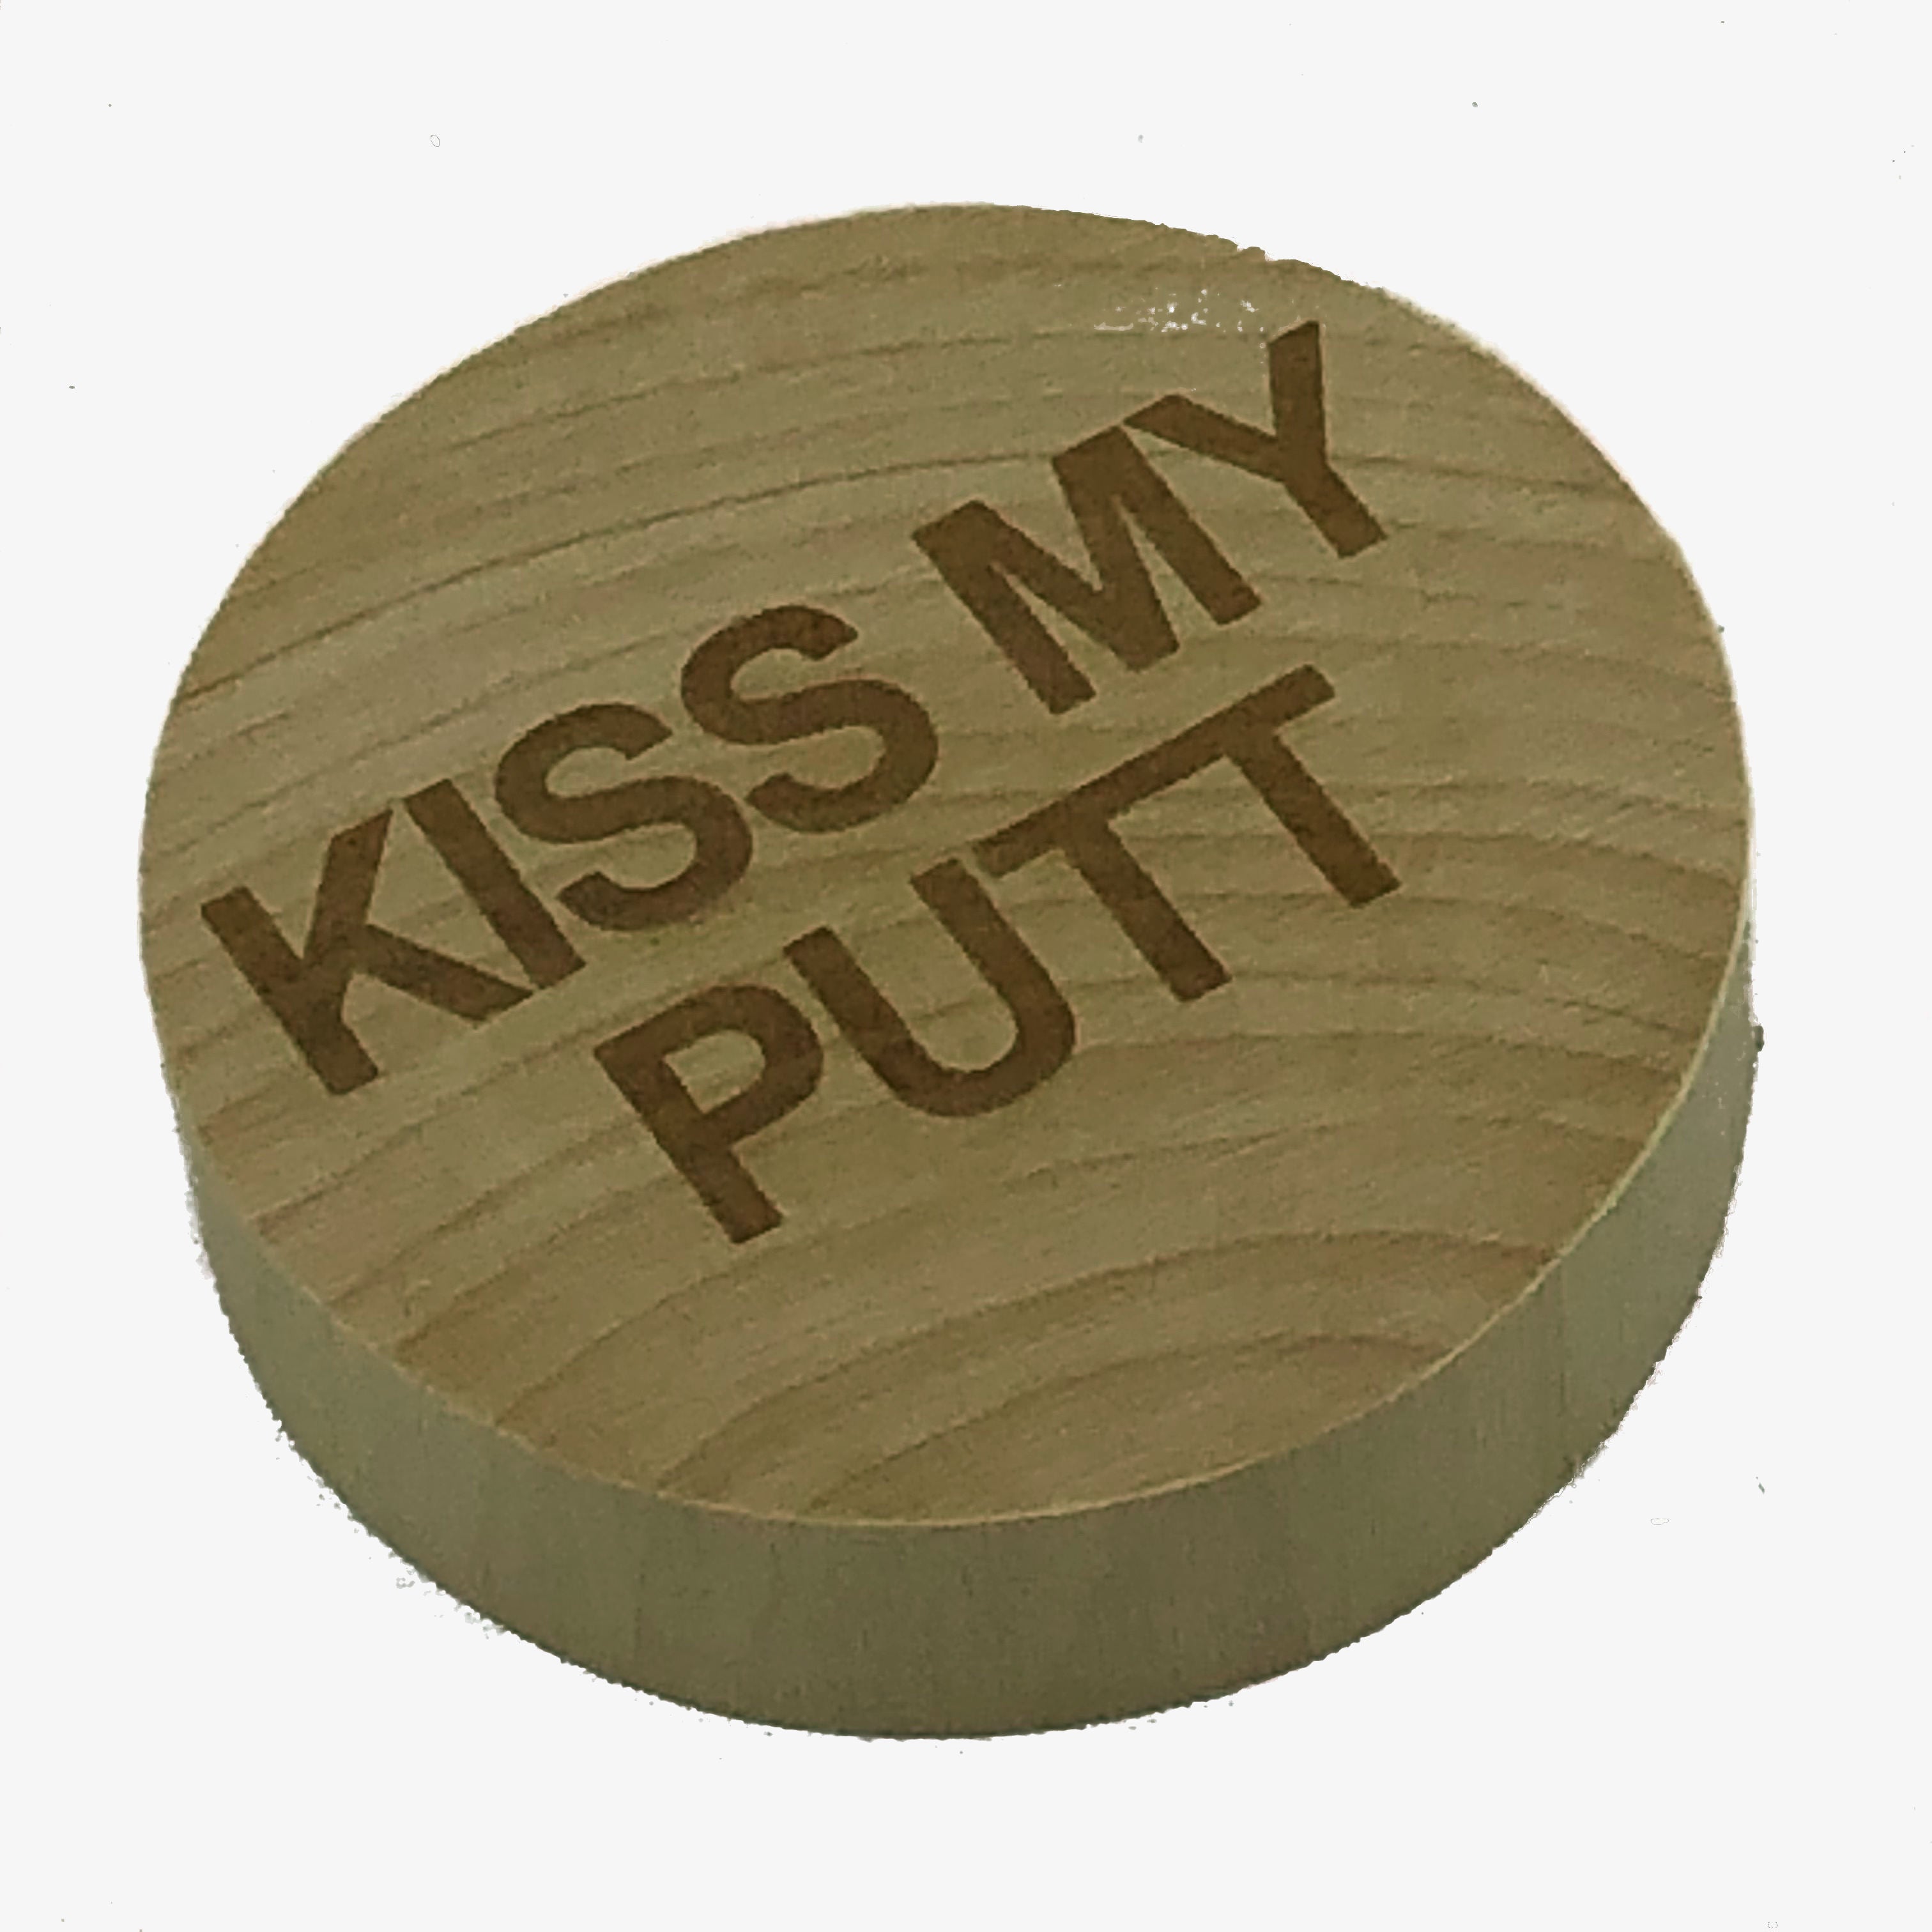  wooden bottle opener - golf - kiss my putt